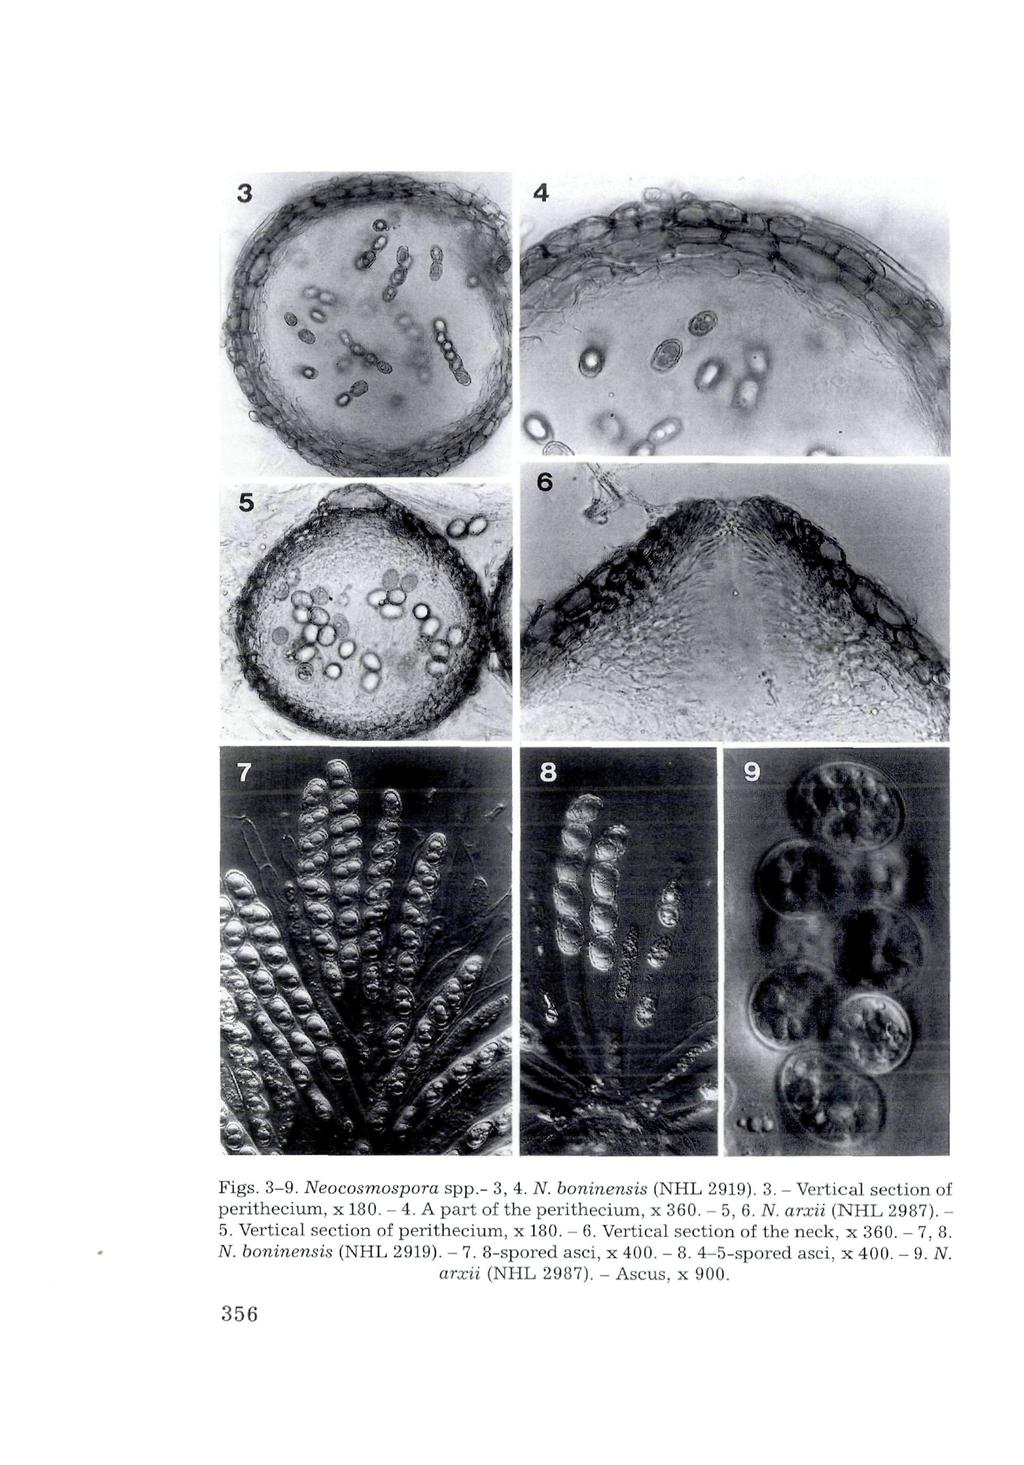 Verlag Ferdinand Berger & Söhne Ges.m.b.H., Horn, Austria, download unter www.biologiezentrum. Figs. 3-9. Neocosmospora spp,- 3, 4. N. boninensis (NHL 2919). 3. - Vertical section of perithecium, x 180.